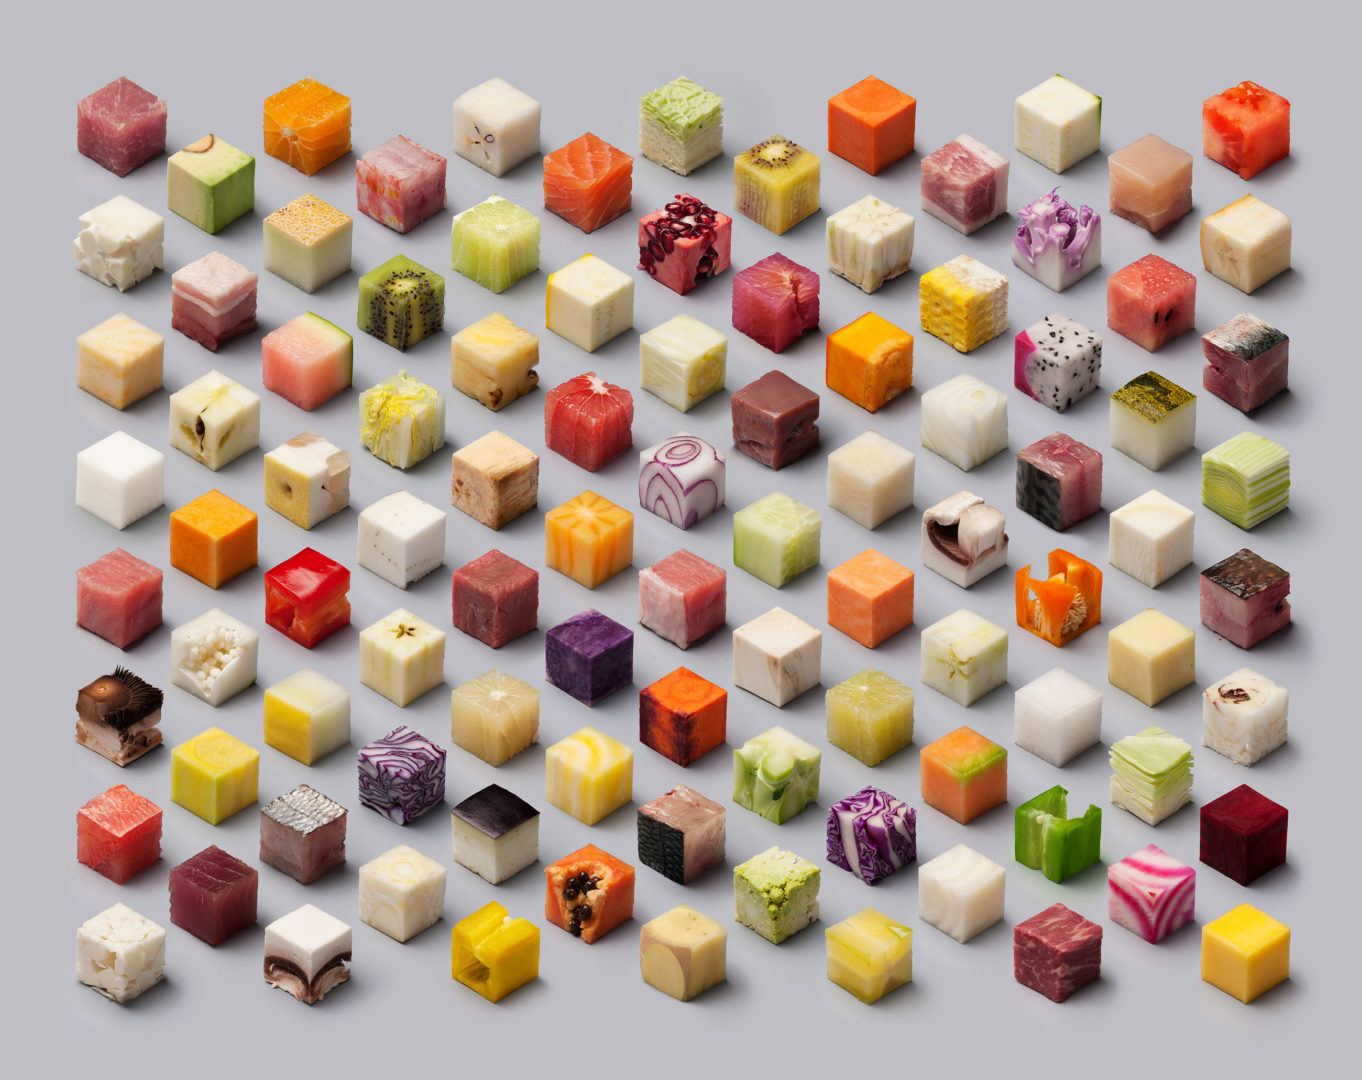 Food art : 98 cubes d'aliments crus coupés et disposés à la perfection